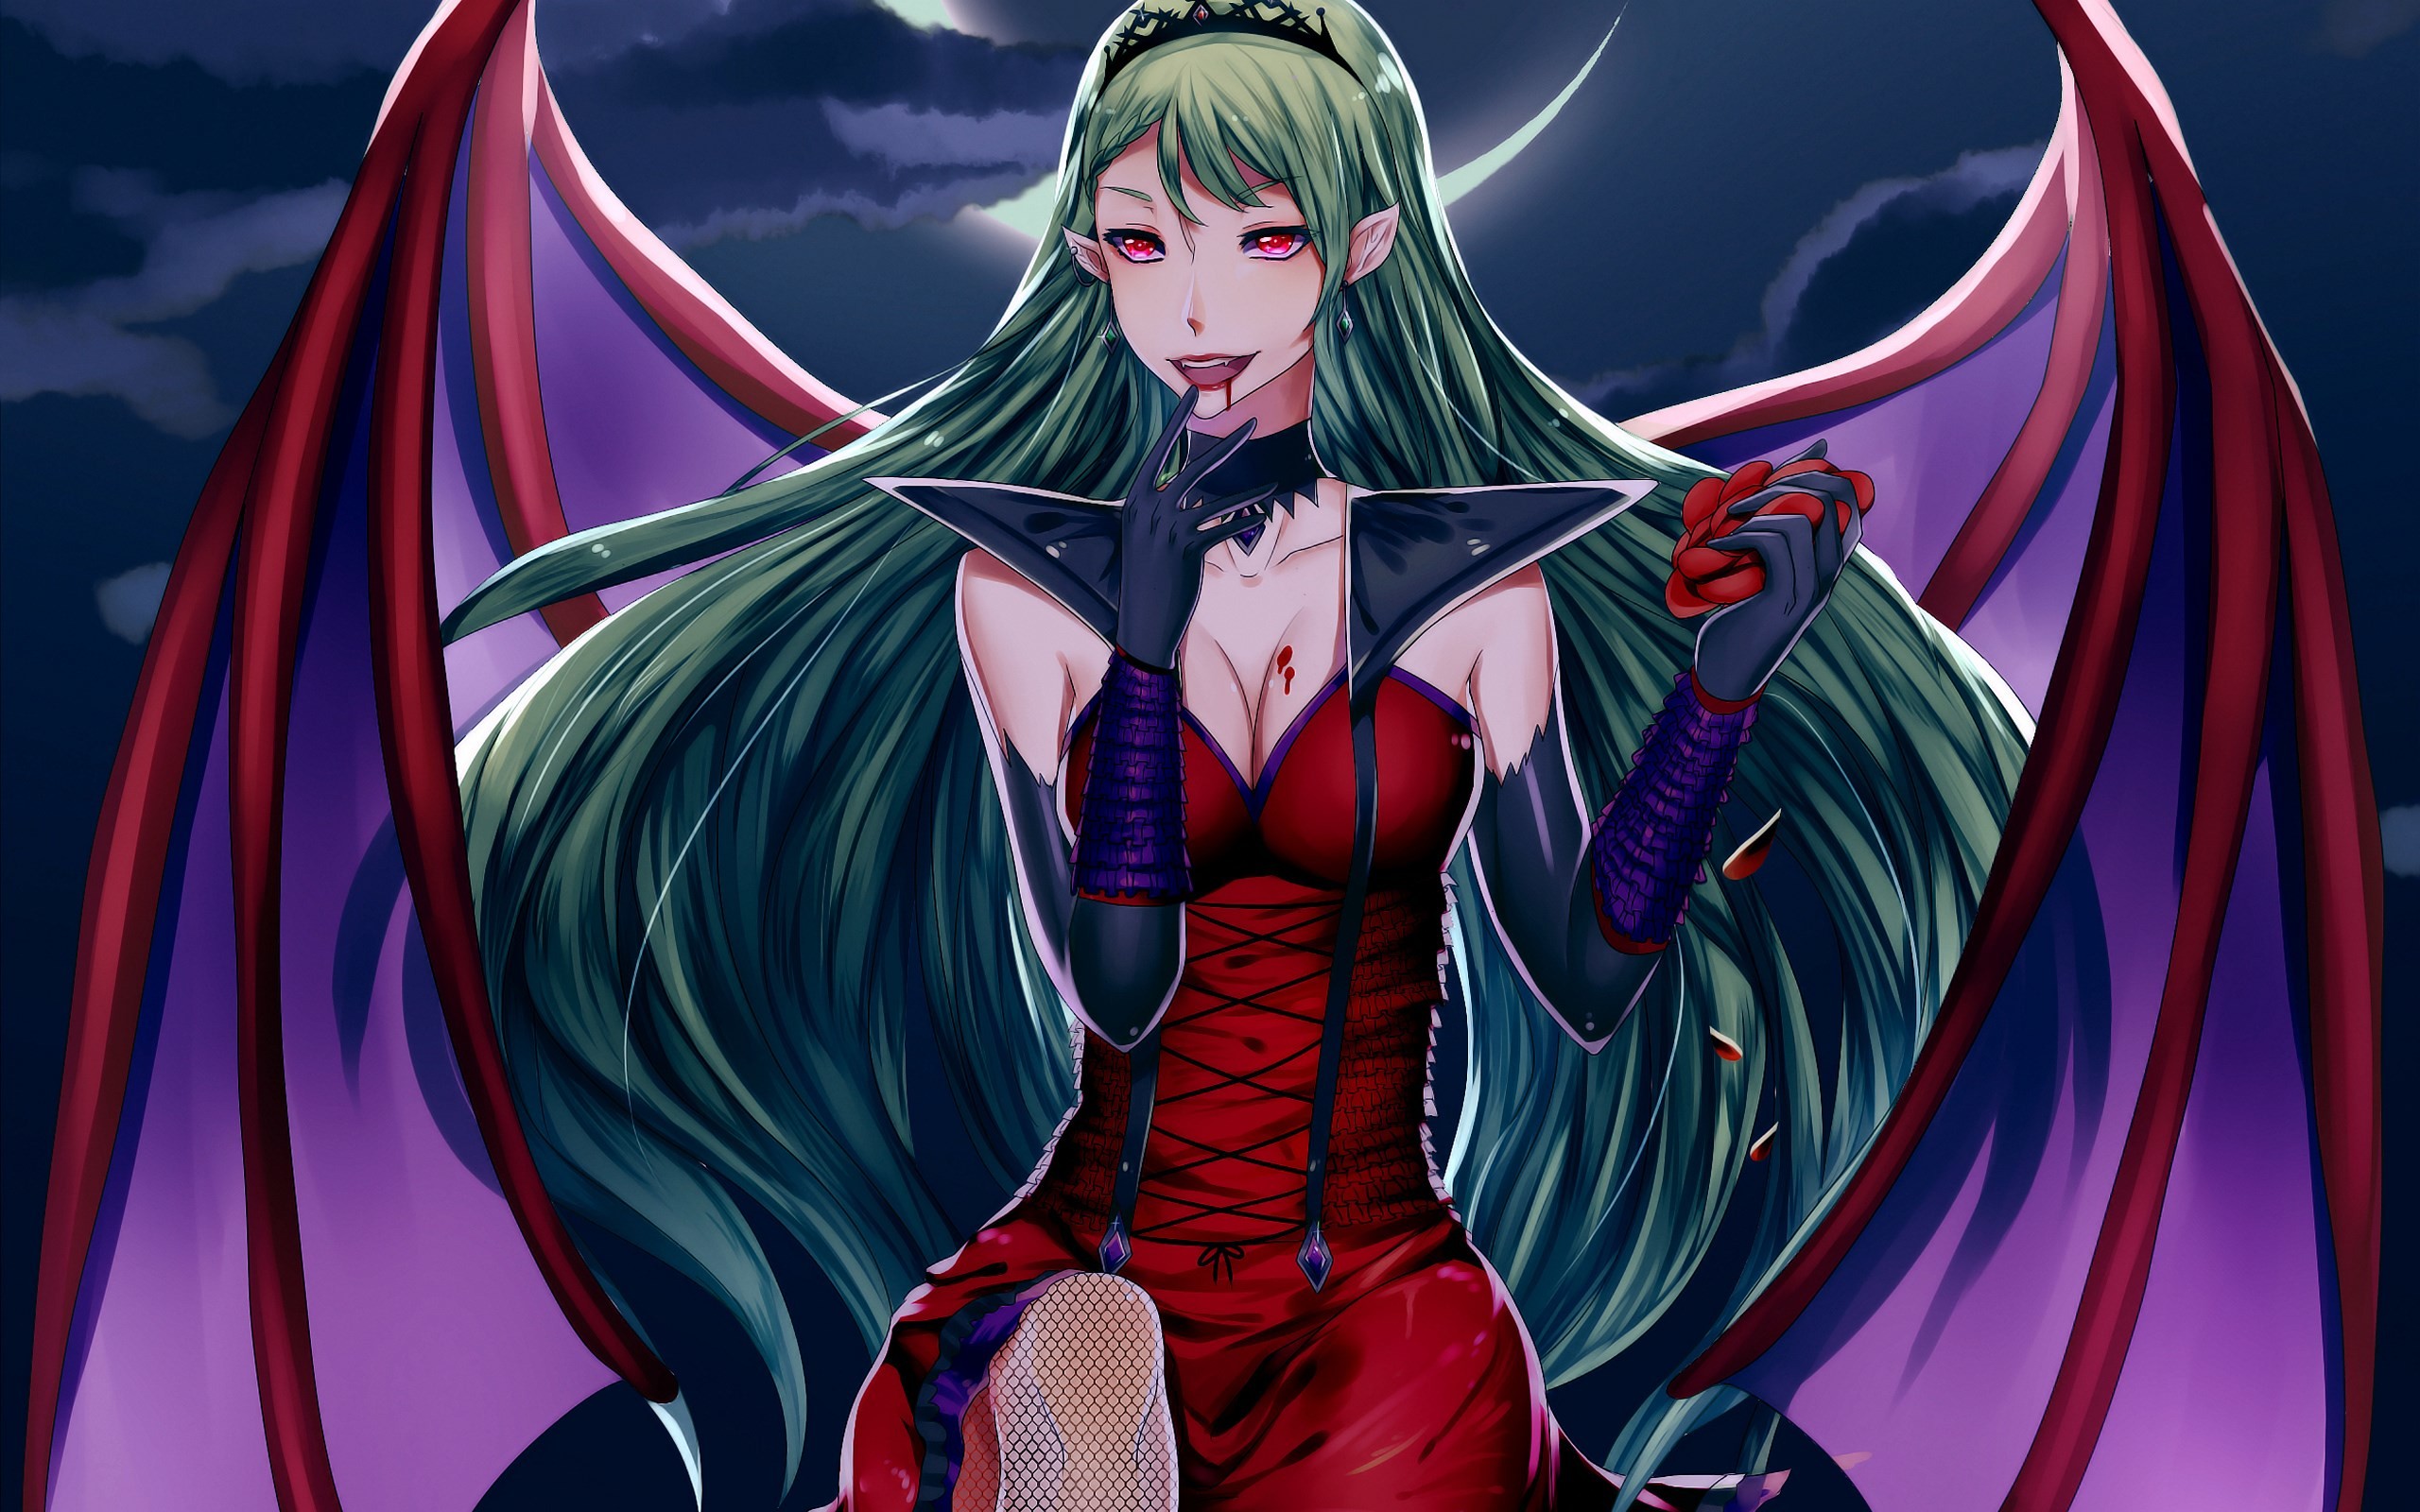 Anime Evil Vampire Girl - 2560x1600 Wallpaper 